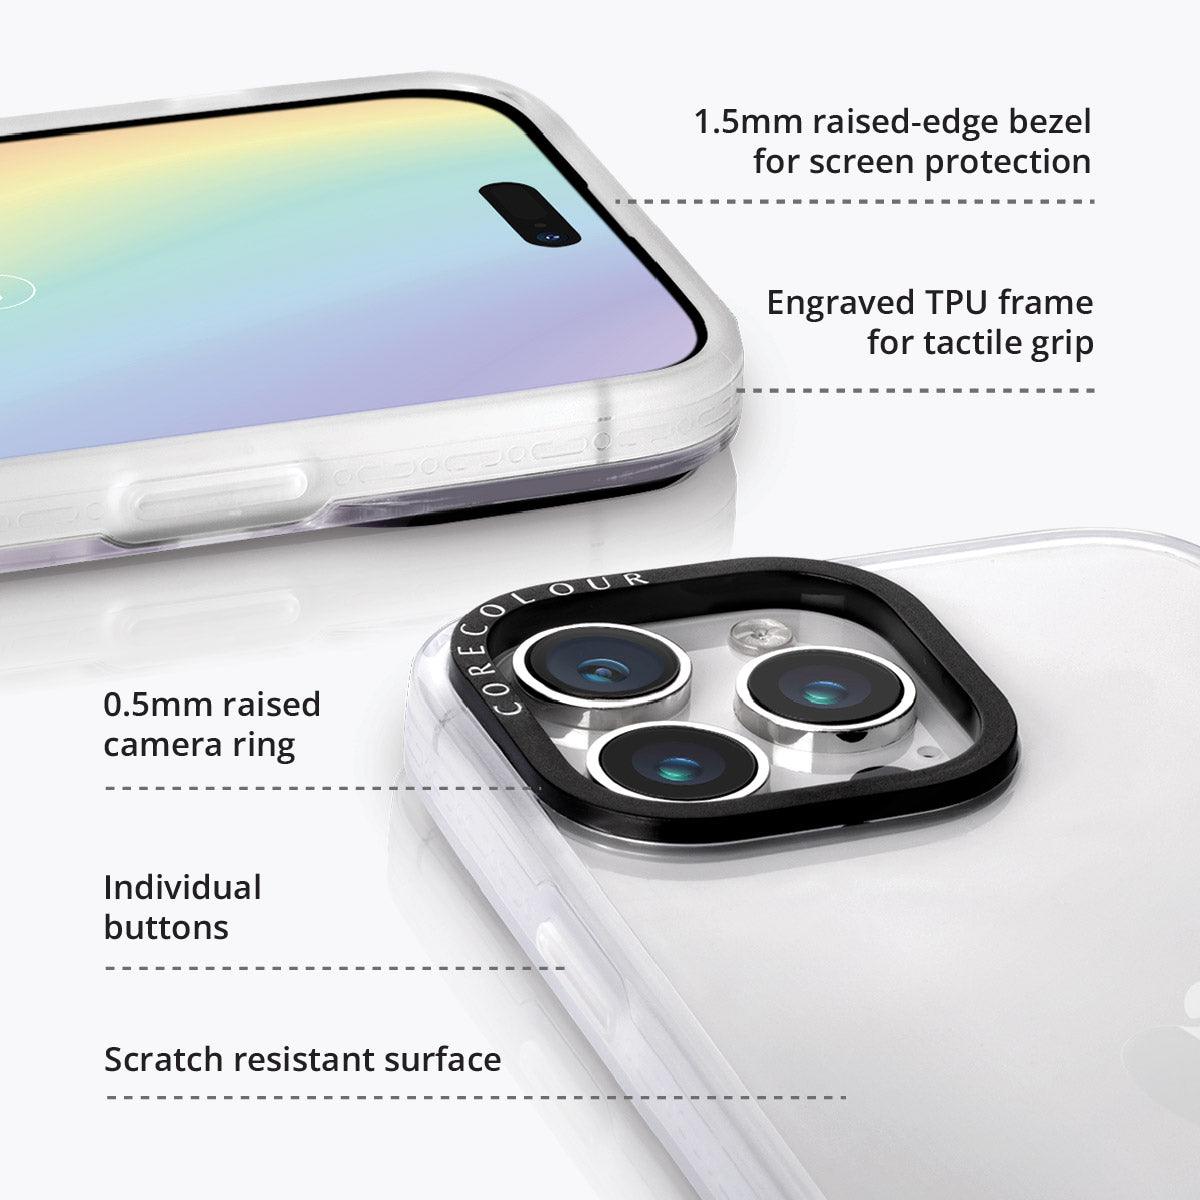 iPhone 12 Pro Max Dancing Rabbit Phone Case MagSafe Compatible - CORECOLOUR AU